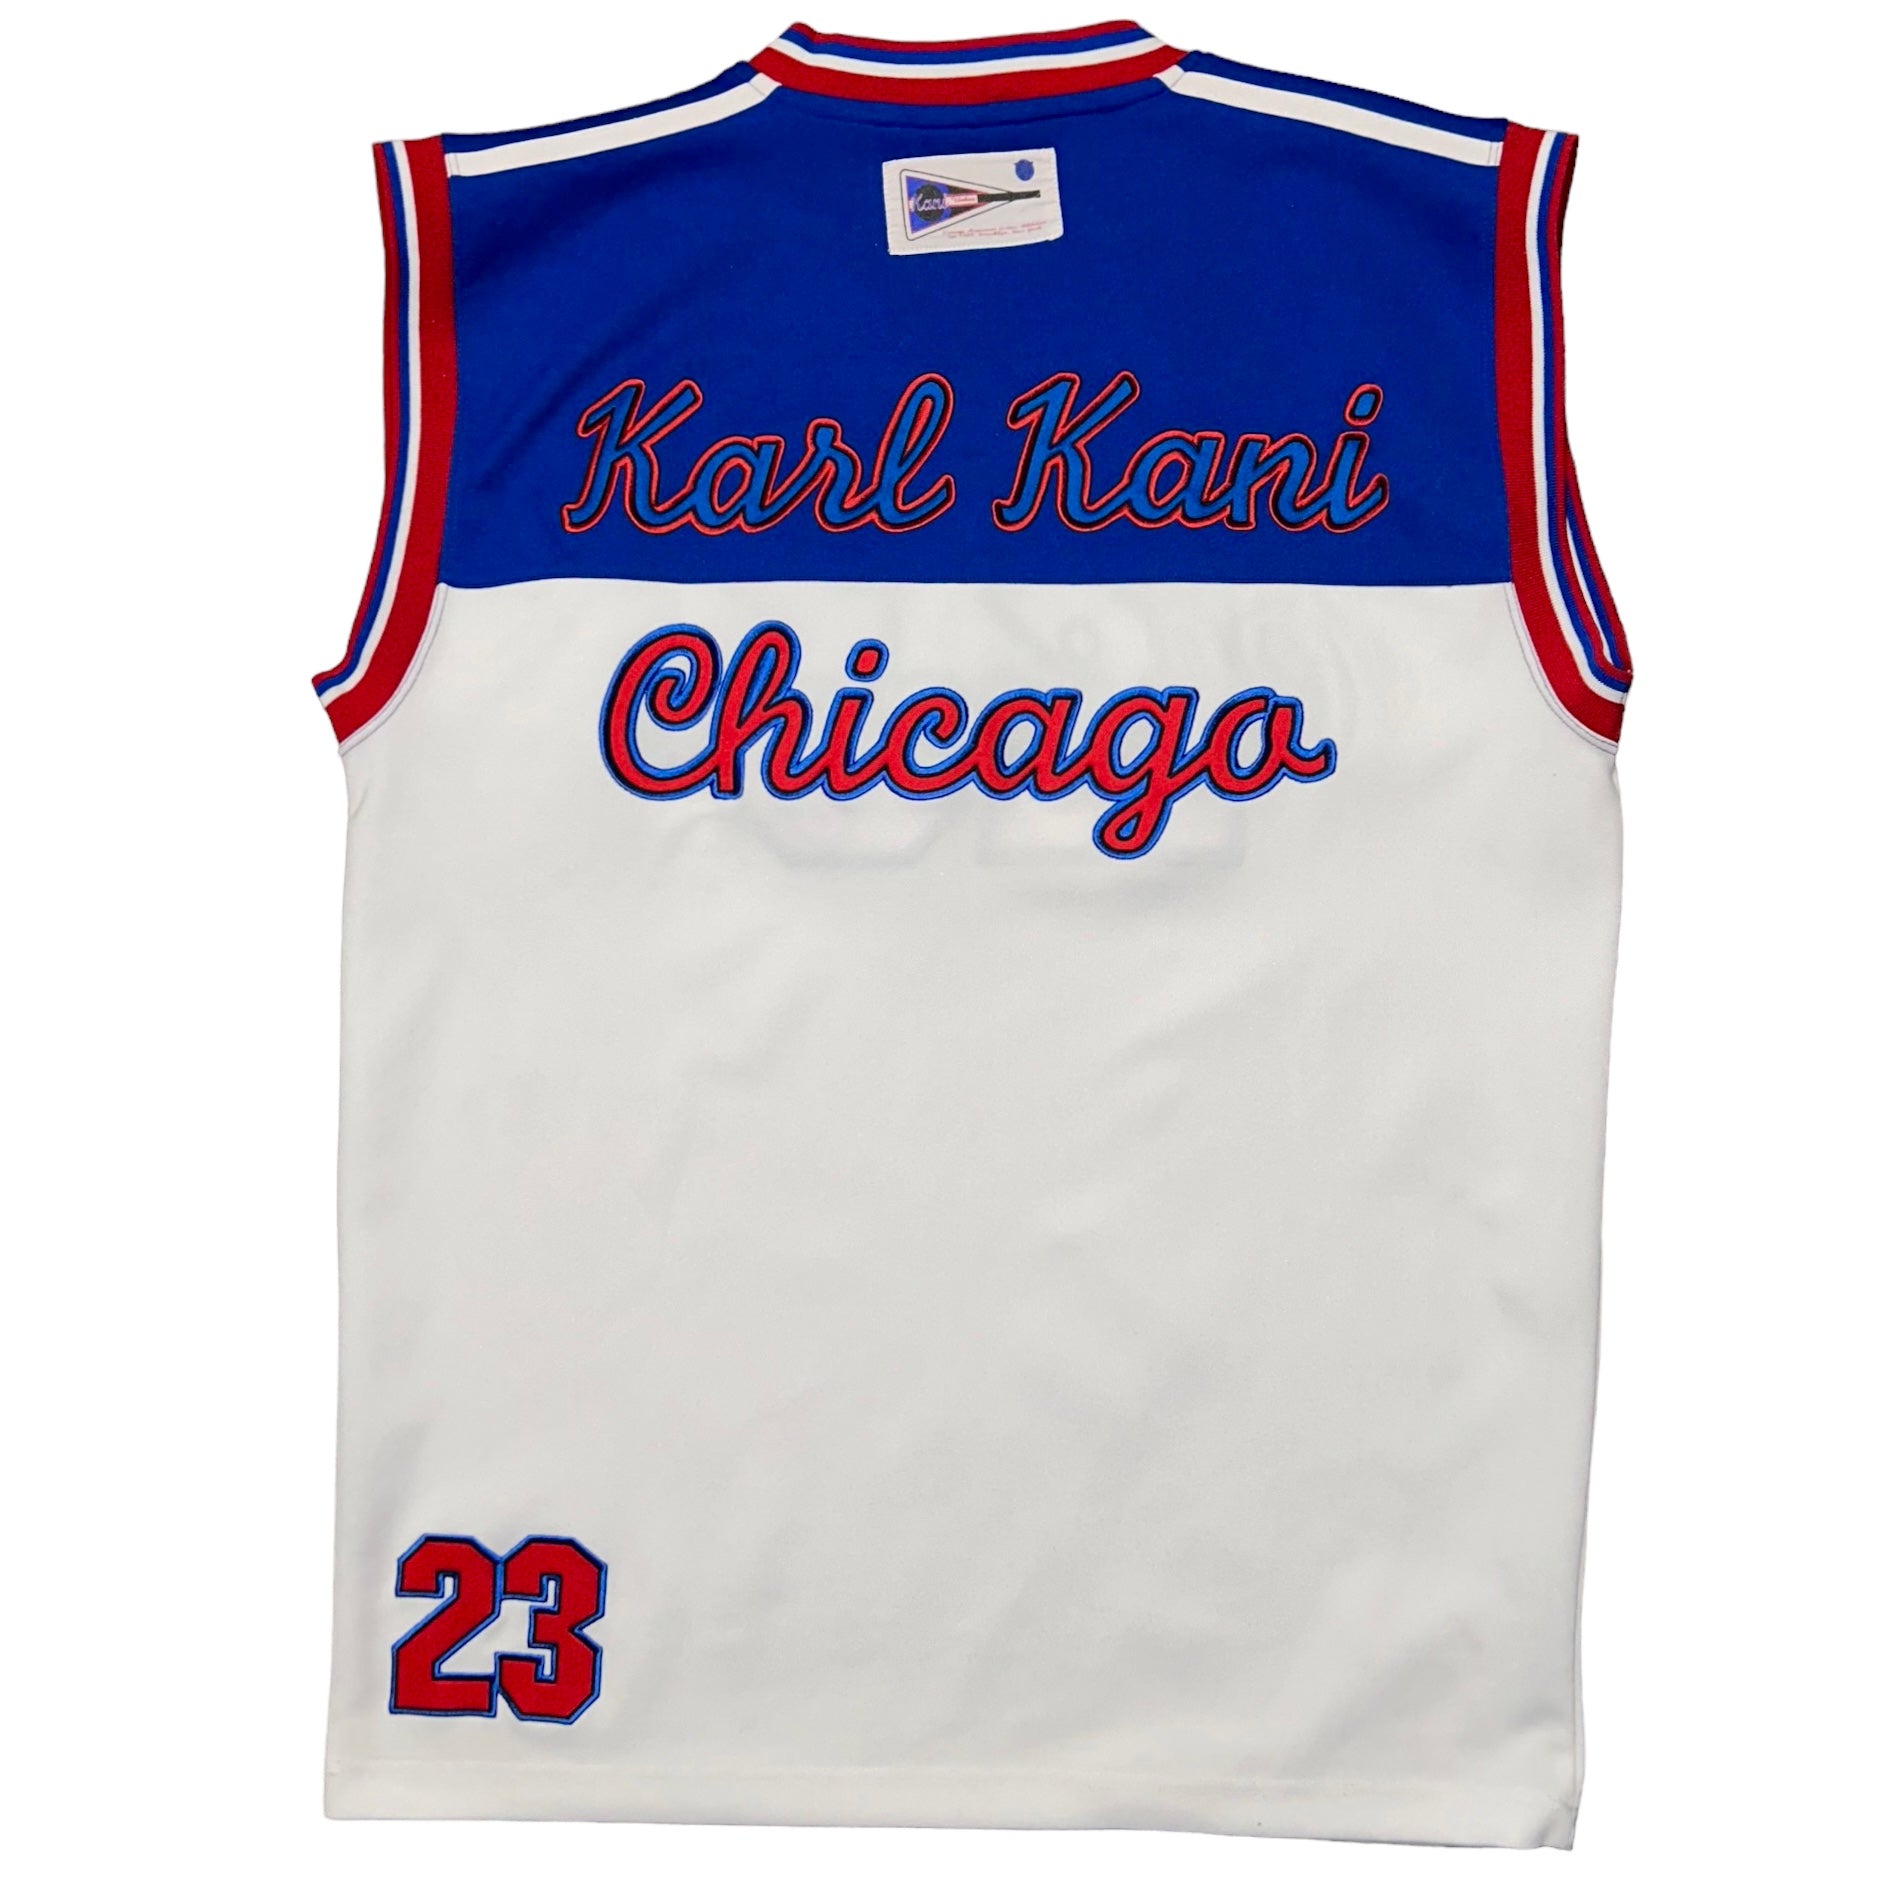 Karl Kani Chicago Suit (XL)